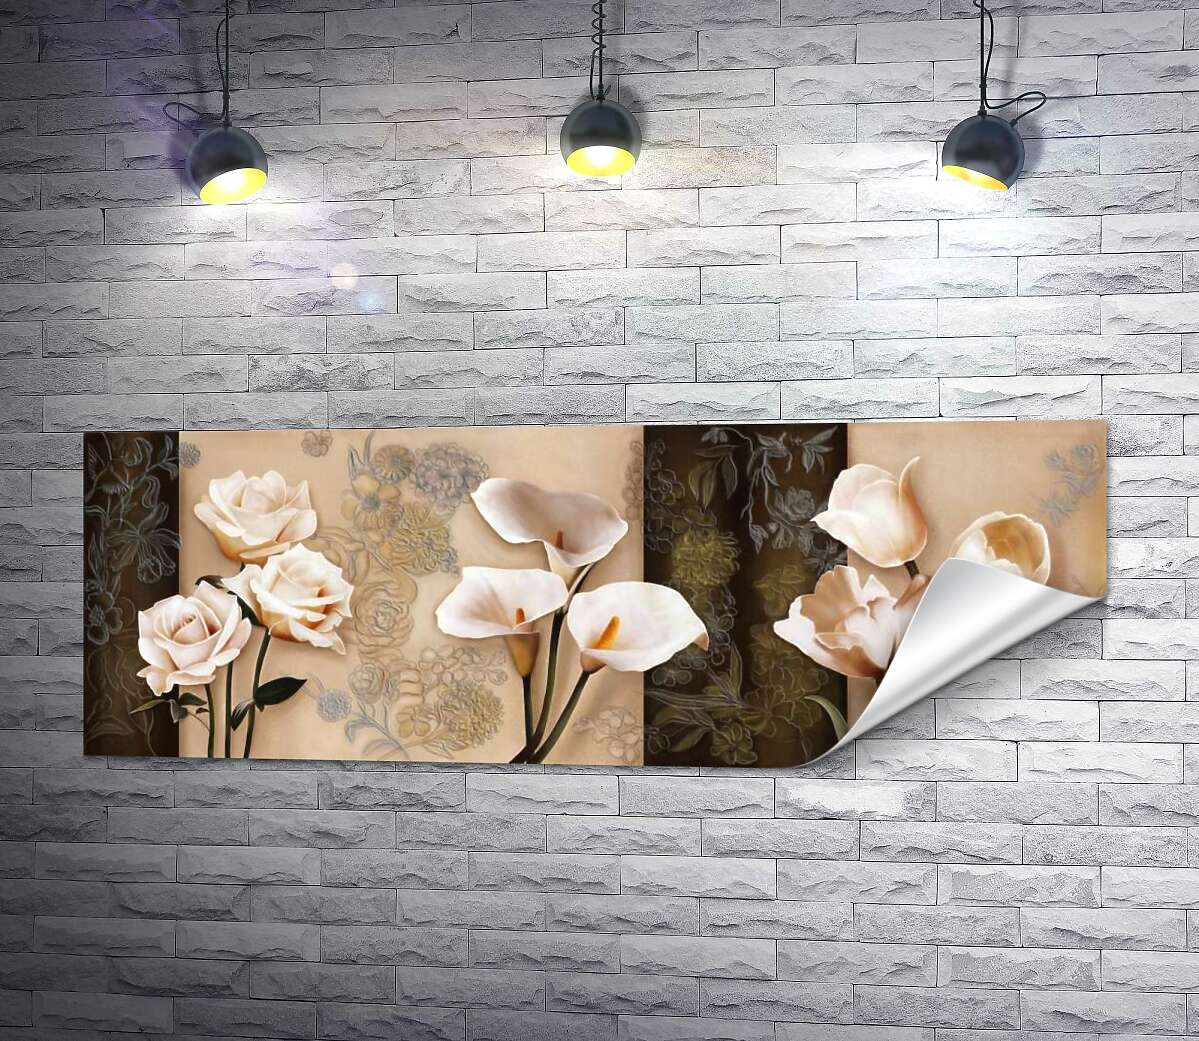 друк Кремові троянди, калли та тюльпани на фоні пастельних орнаментів